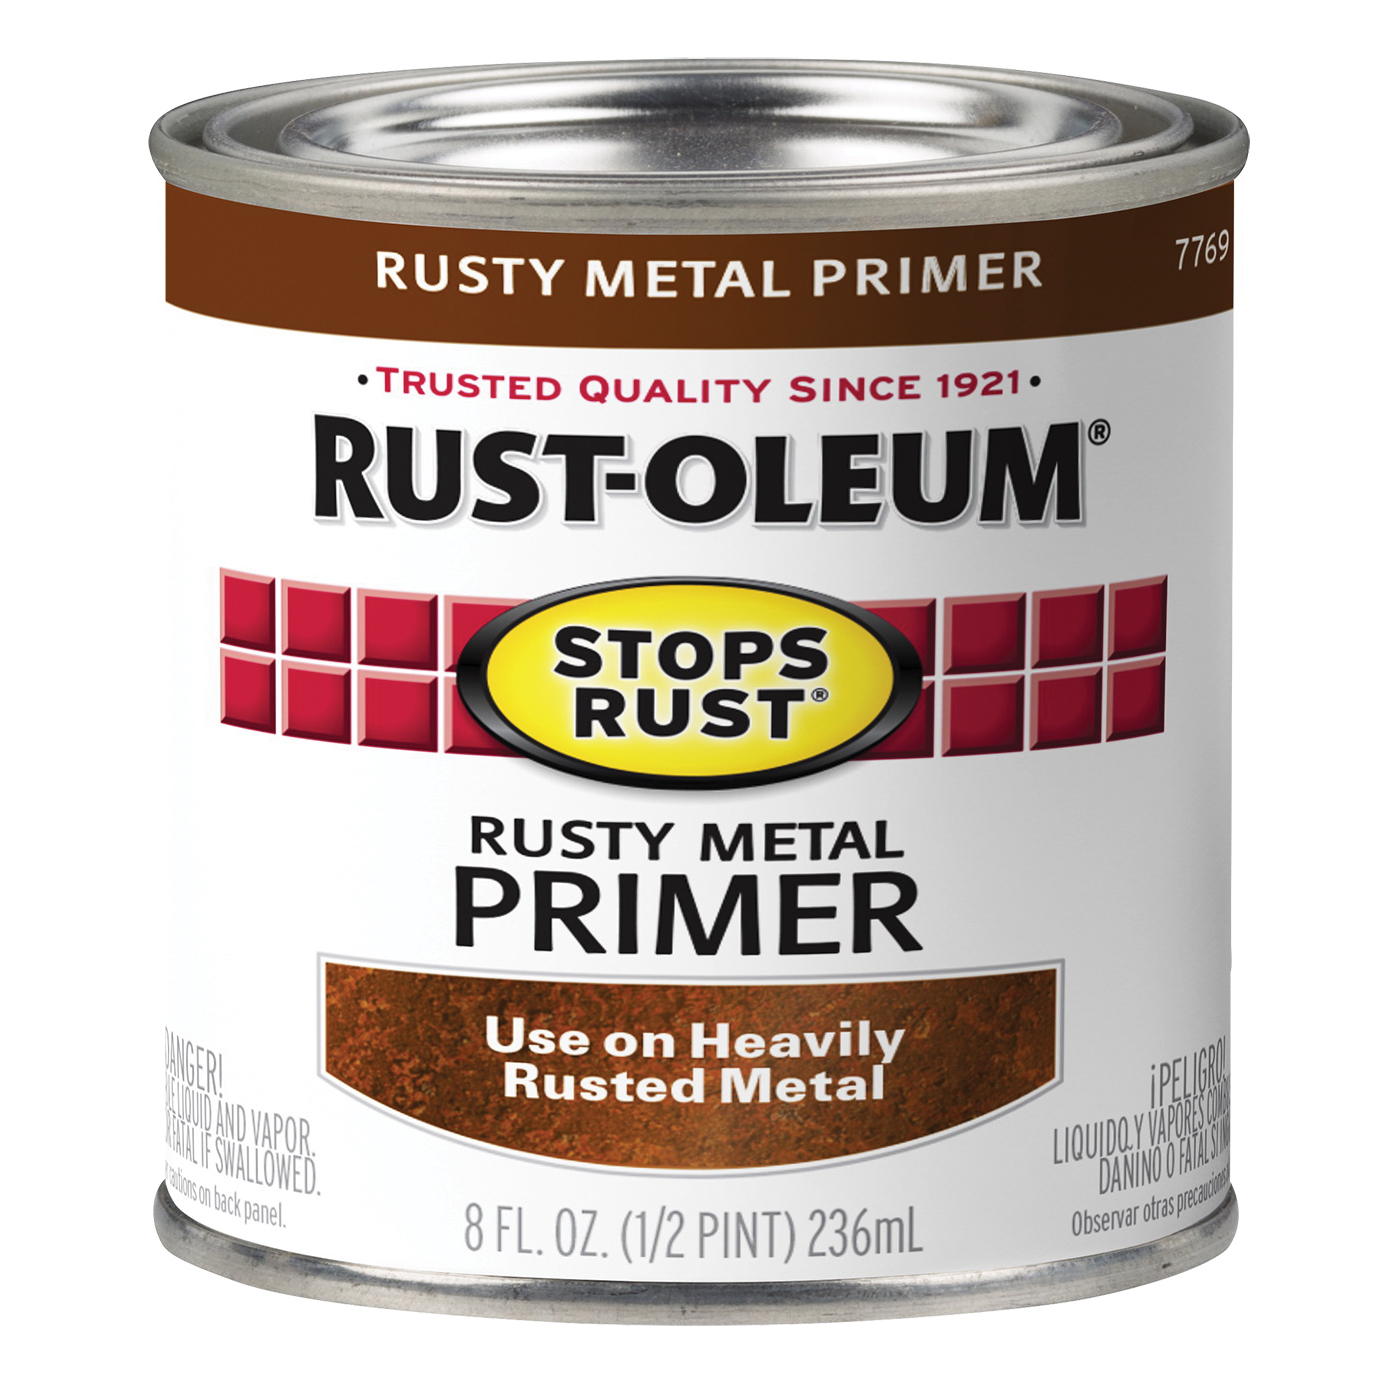 Rust-oleum 7769730